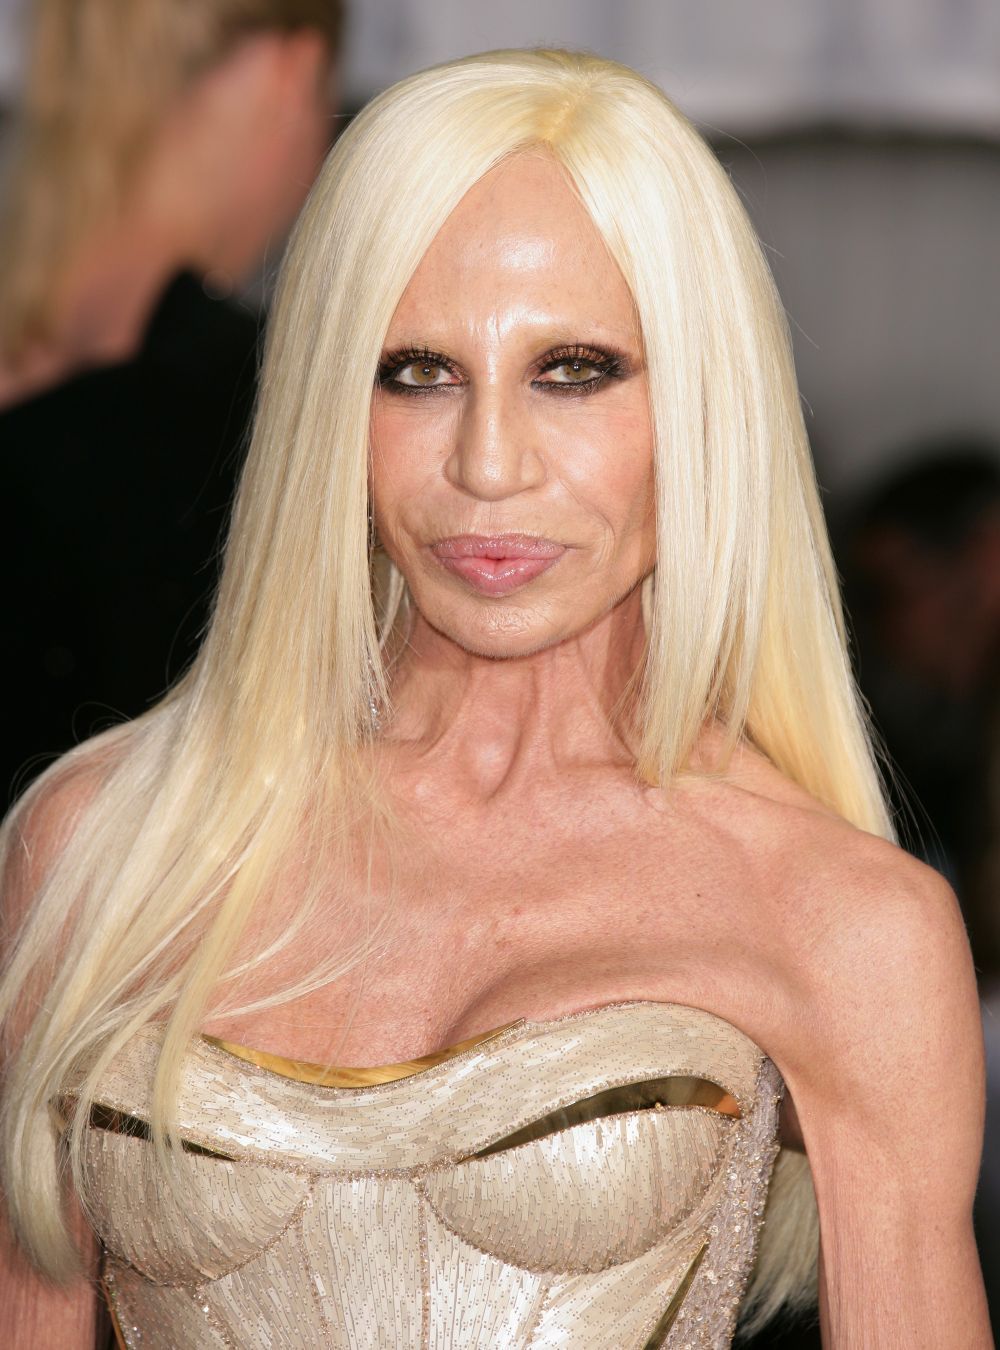 Ai vazut-o vreodata pe Donatella Versace inainte de operatie? Felul in care arata e absolut incredibil: FOTO